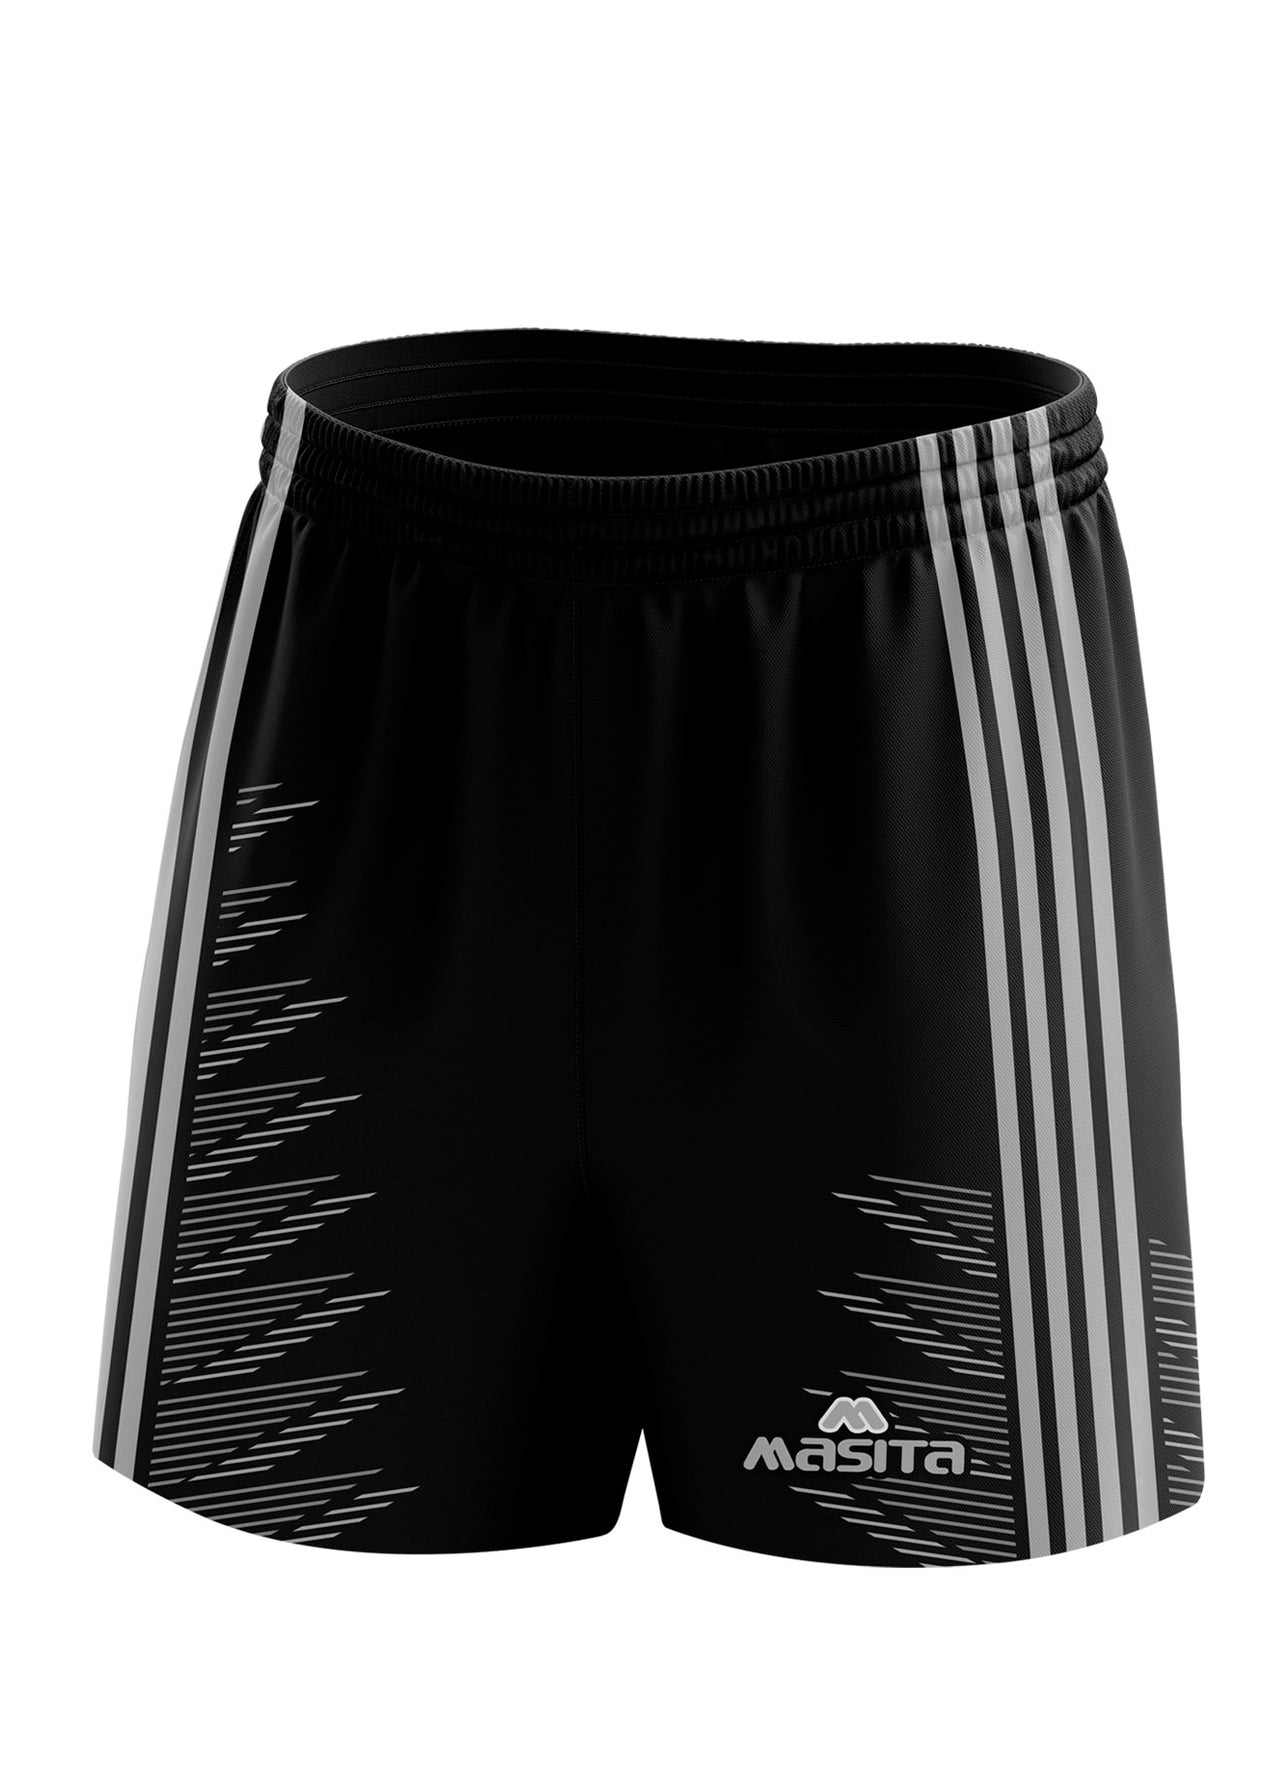 Hydro Gaelic Shorts Black/Grey Adult